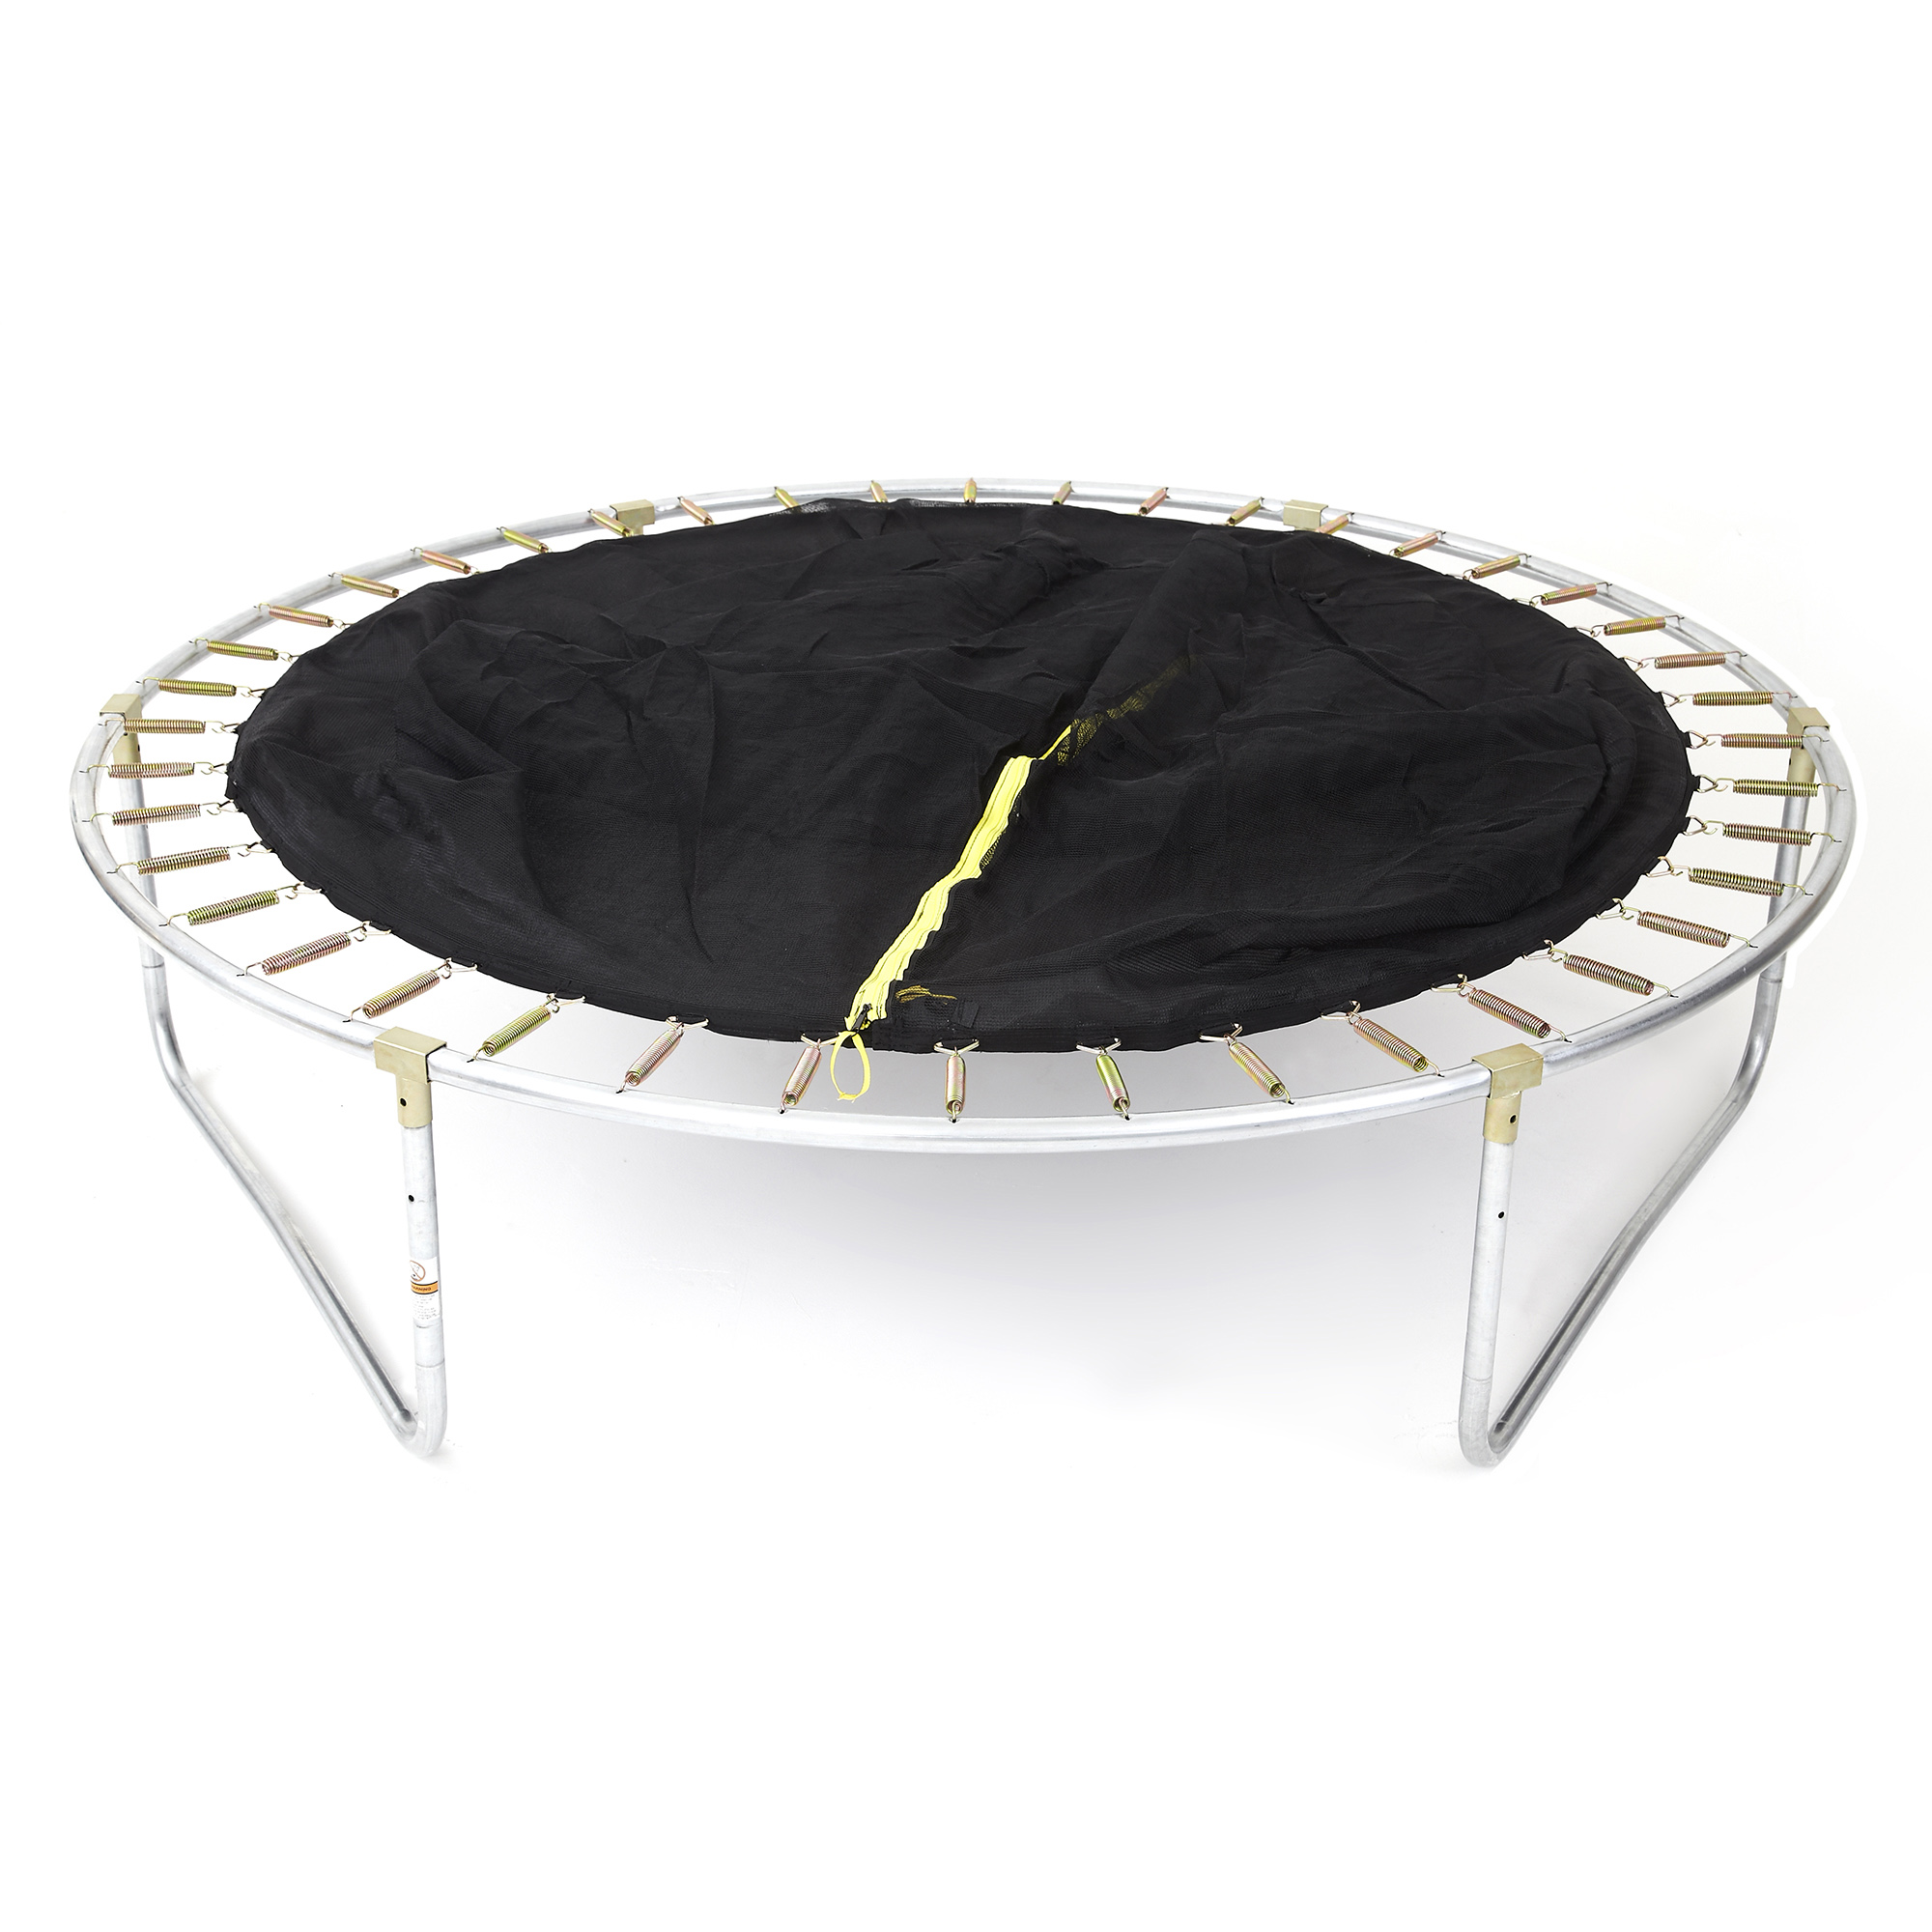 Plum - trampolino elastico bambini con protezioni - diametro 244 cm - SUN&SPORT